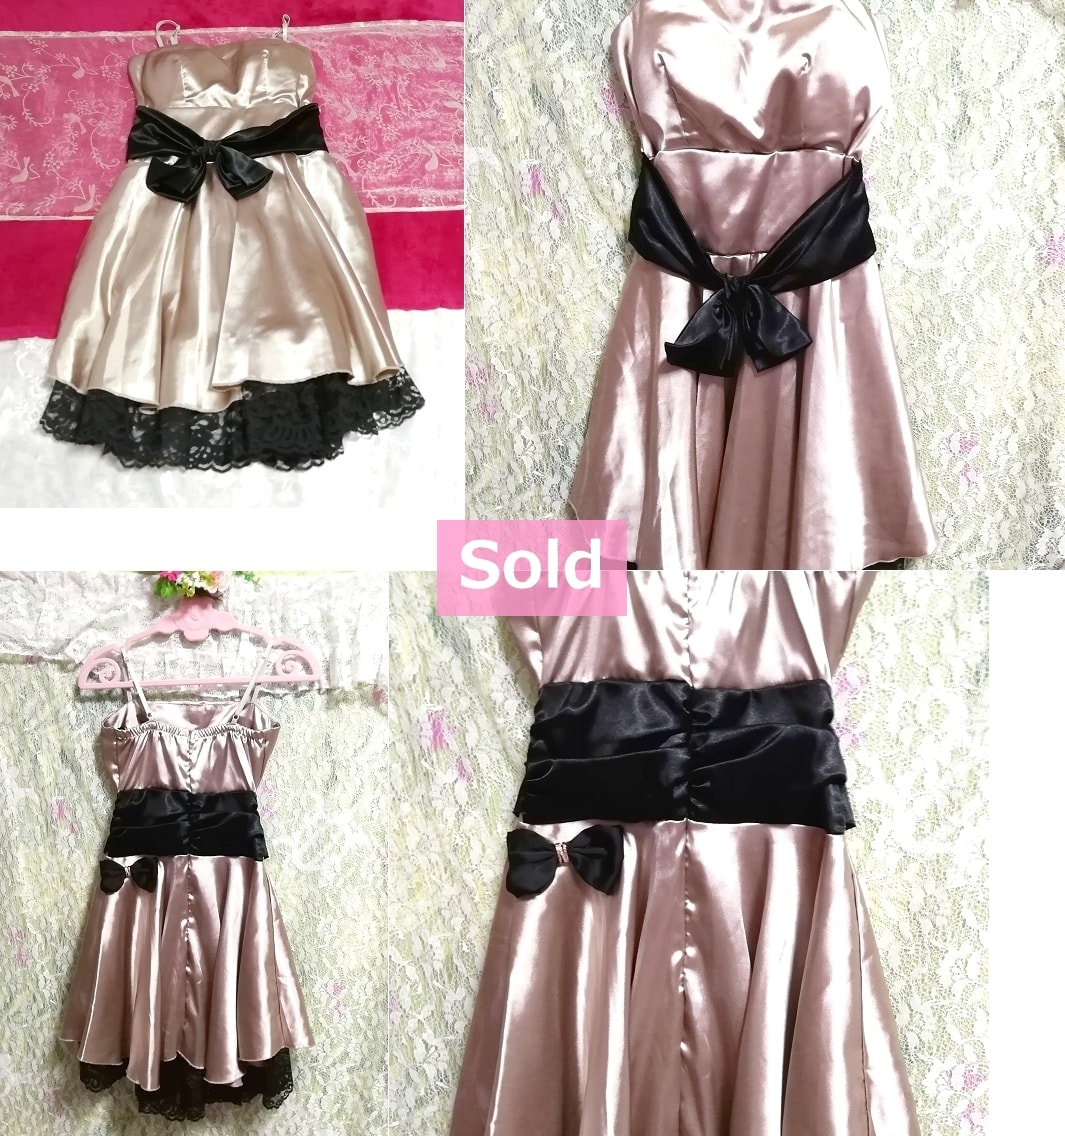 ピンクシャンパン色光沢黒レース黒リボンワンピースドレス Pink champagne color glossy black lace ribbon onepiece dress